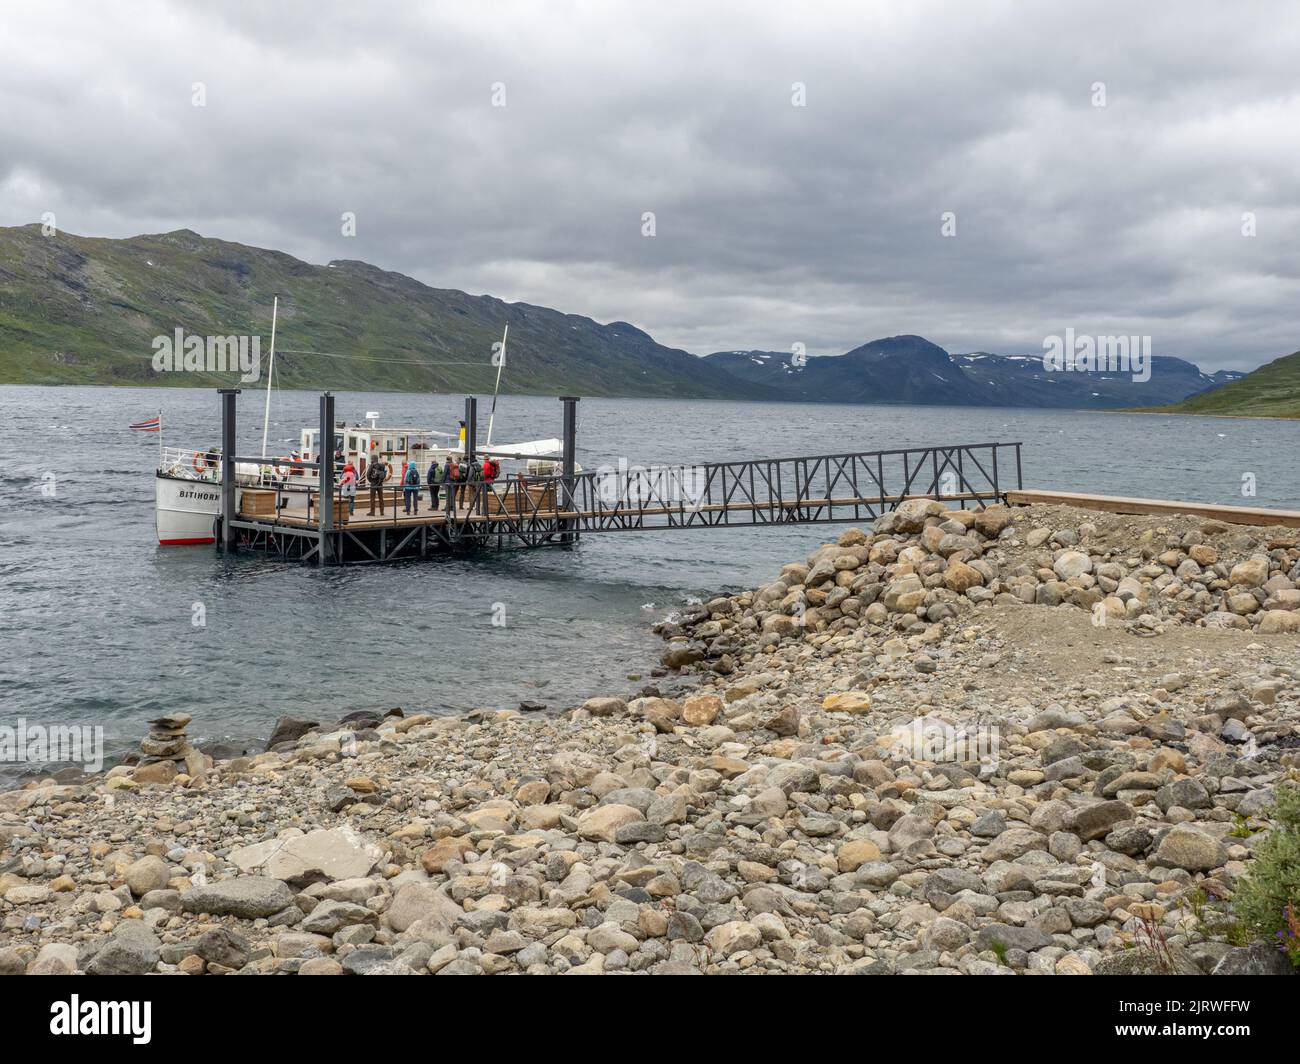 Le bateau-ferry Bitihorn collectant les passagers de la jetée de Torfinsbu sur le lac Bygdin dans le parc national de Jotunheimen en Norvège Banque D'Images